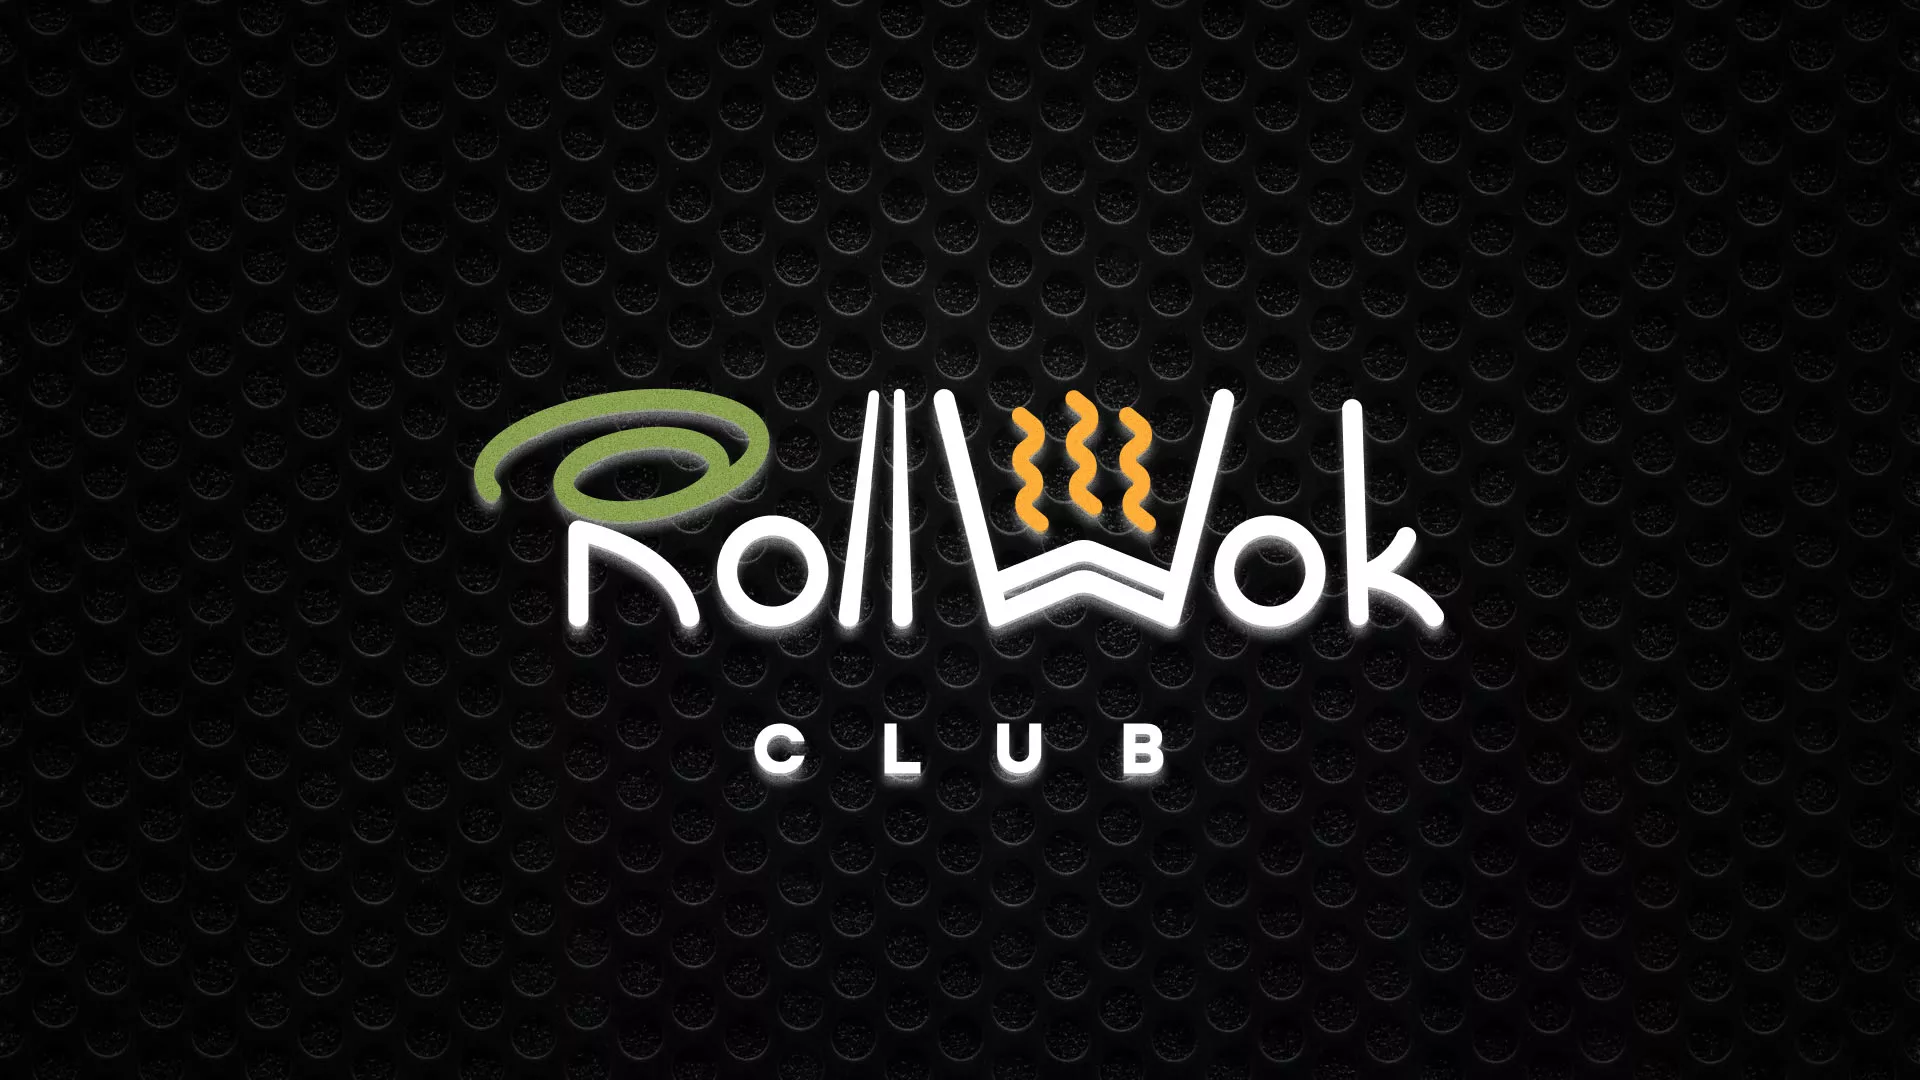 Брендирование торговых точек суши-бара «Roll Wok Club» в Архангельске